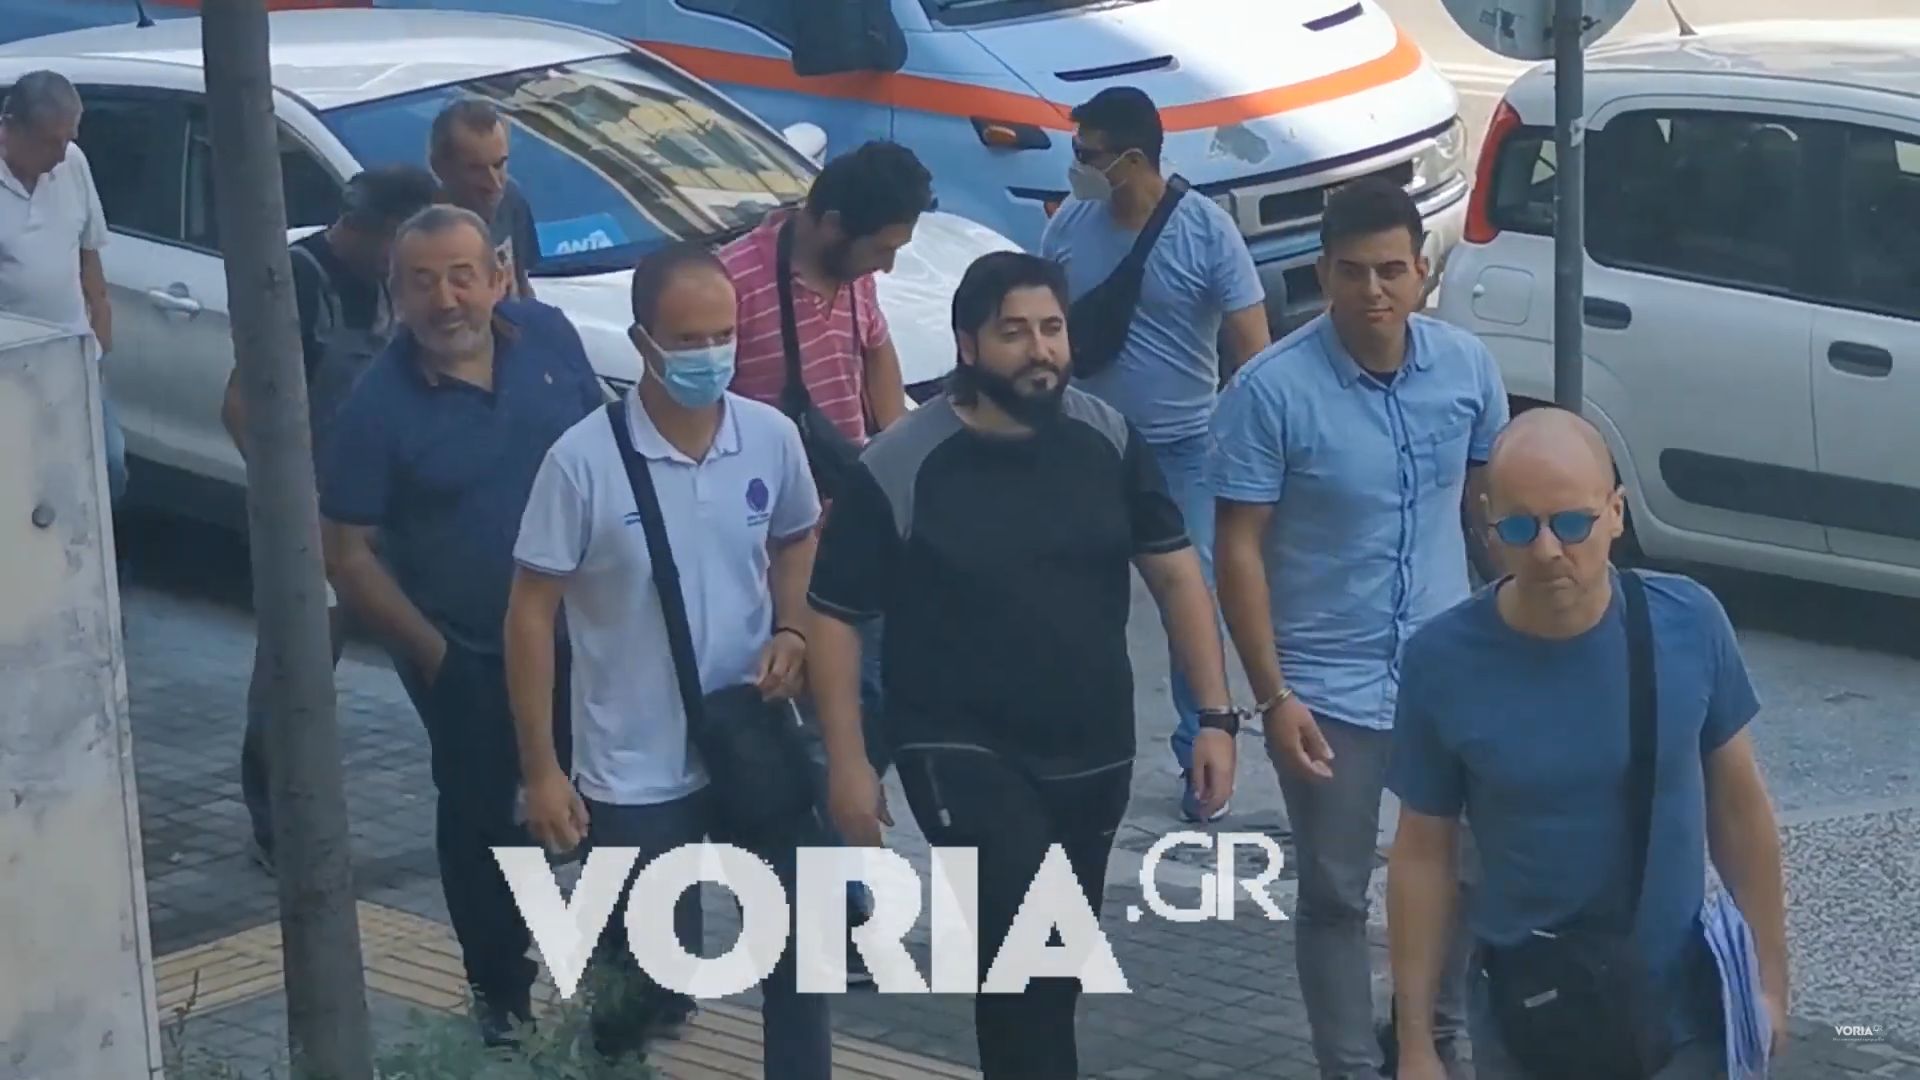 Ελεύθεροι οι δύο συλληφθέντες για τους εξορκισμούς στη Θεσσαλονίκη. Ορίστηκε τακτική δικάσιμος στις 14 Νοεμβρίου